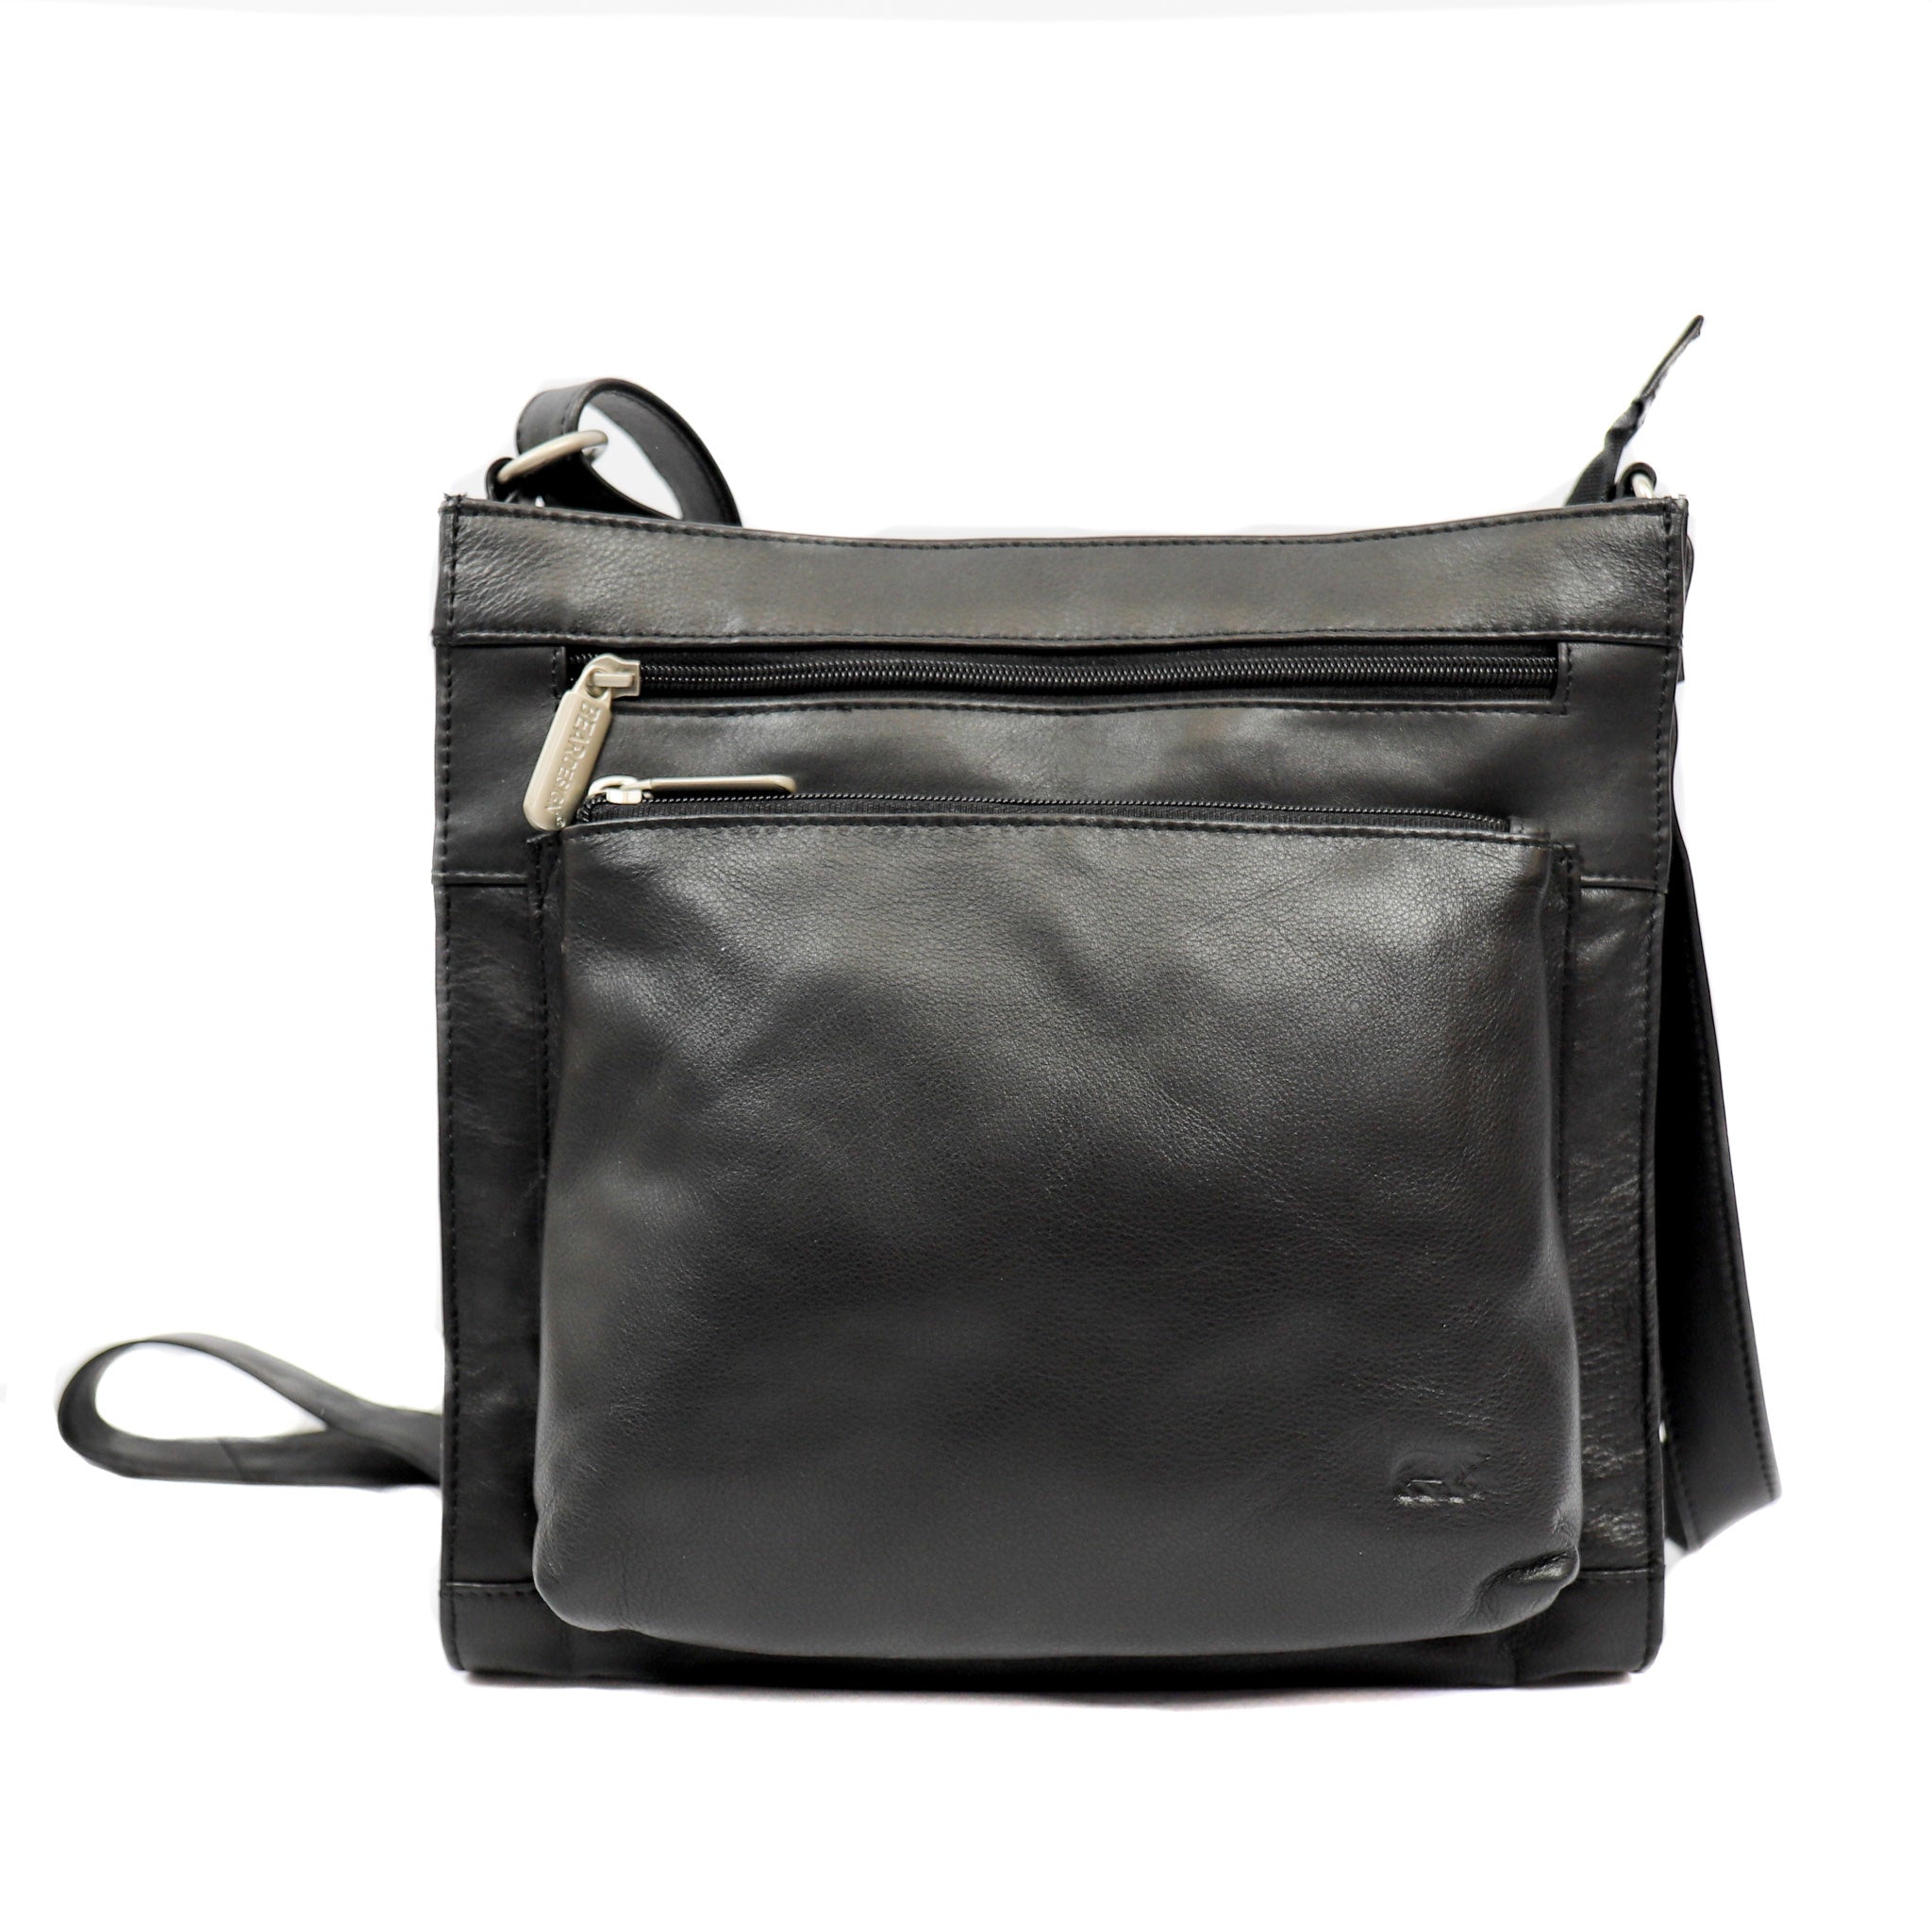 Shoulder bag 'Irene' black - B 3126